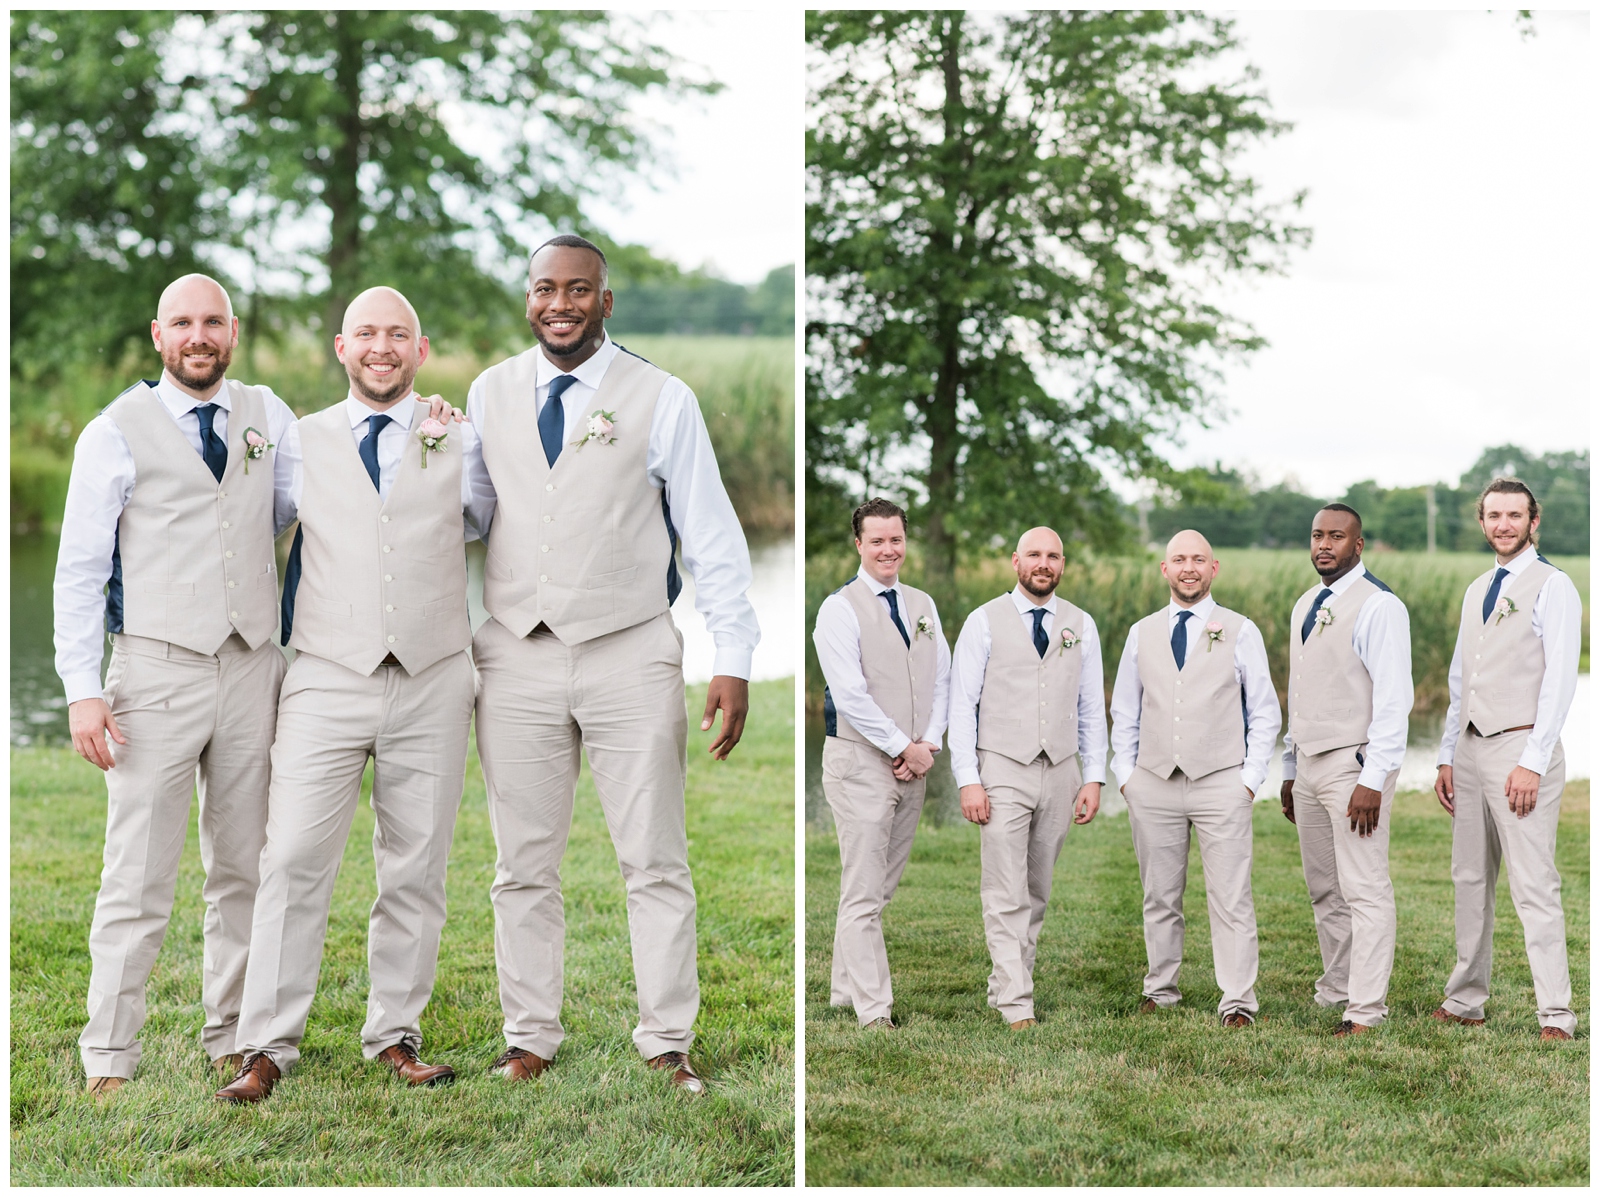 groom poses with groomsmen in tan vests and navy ties